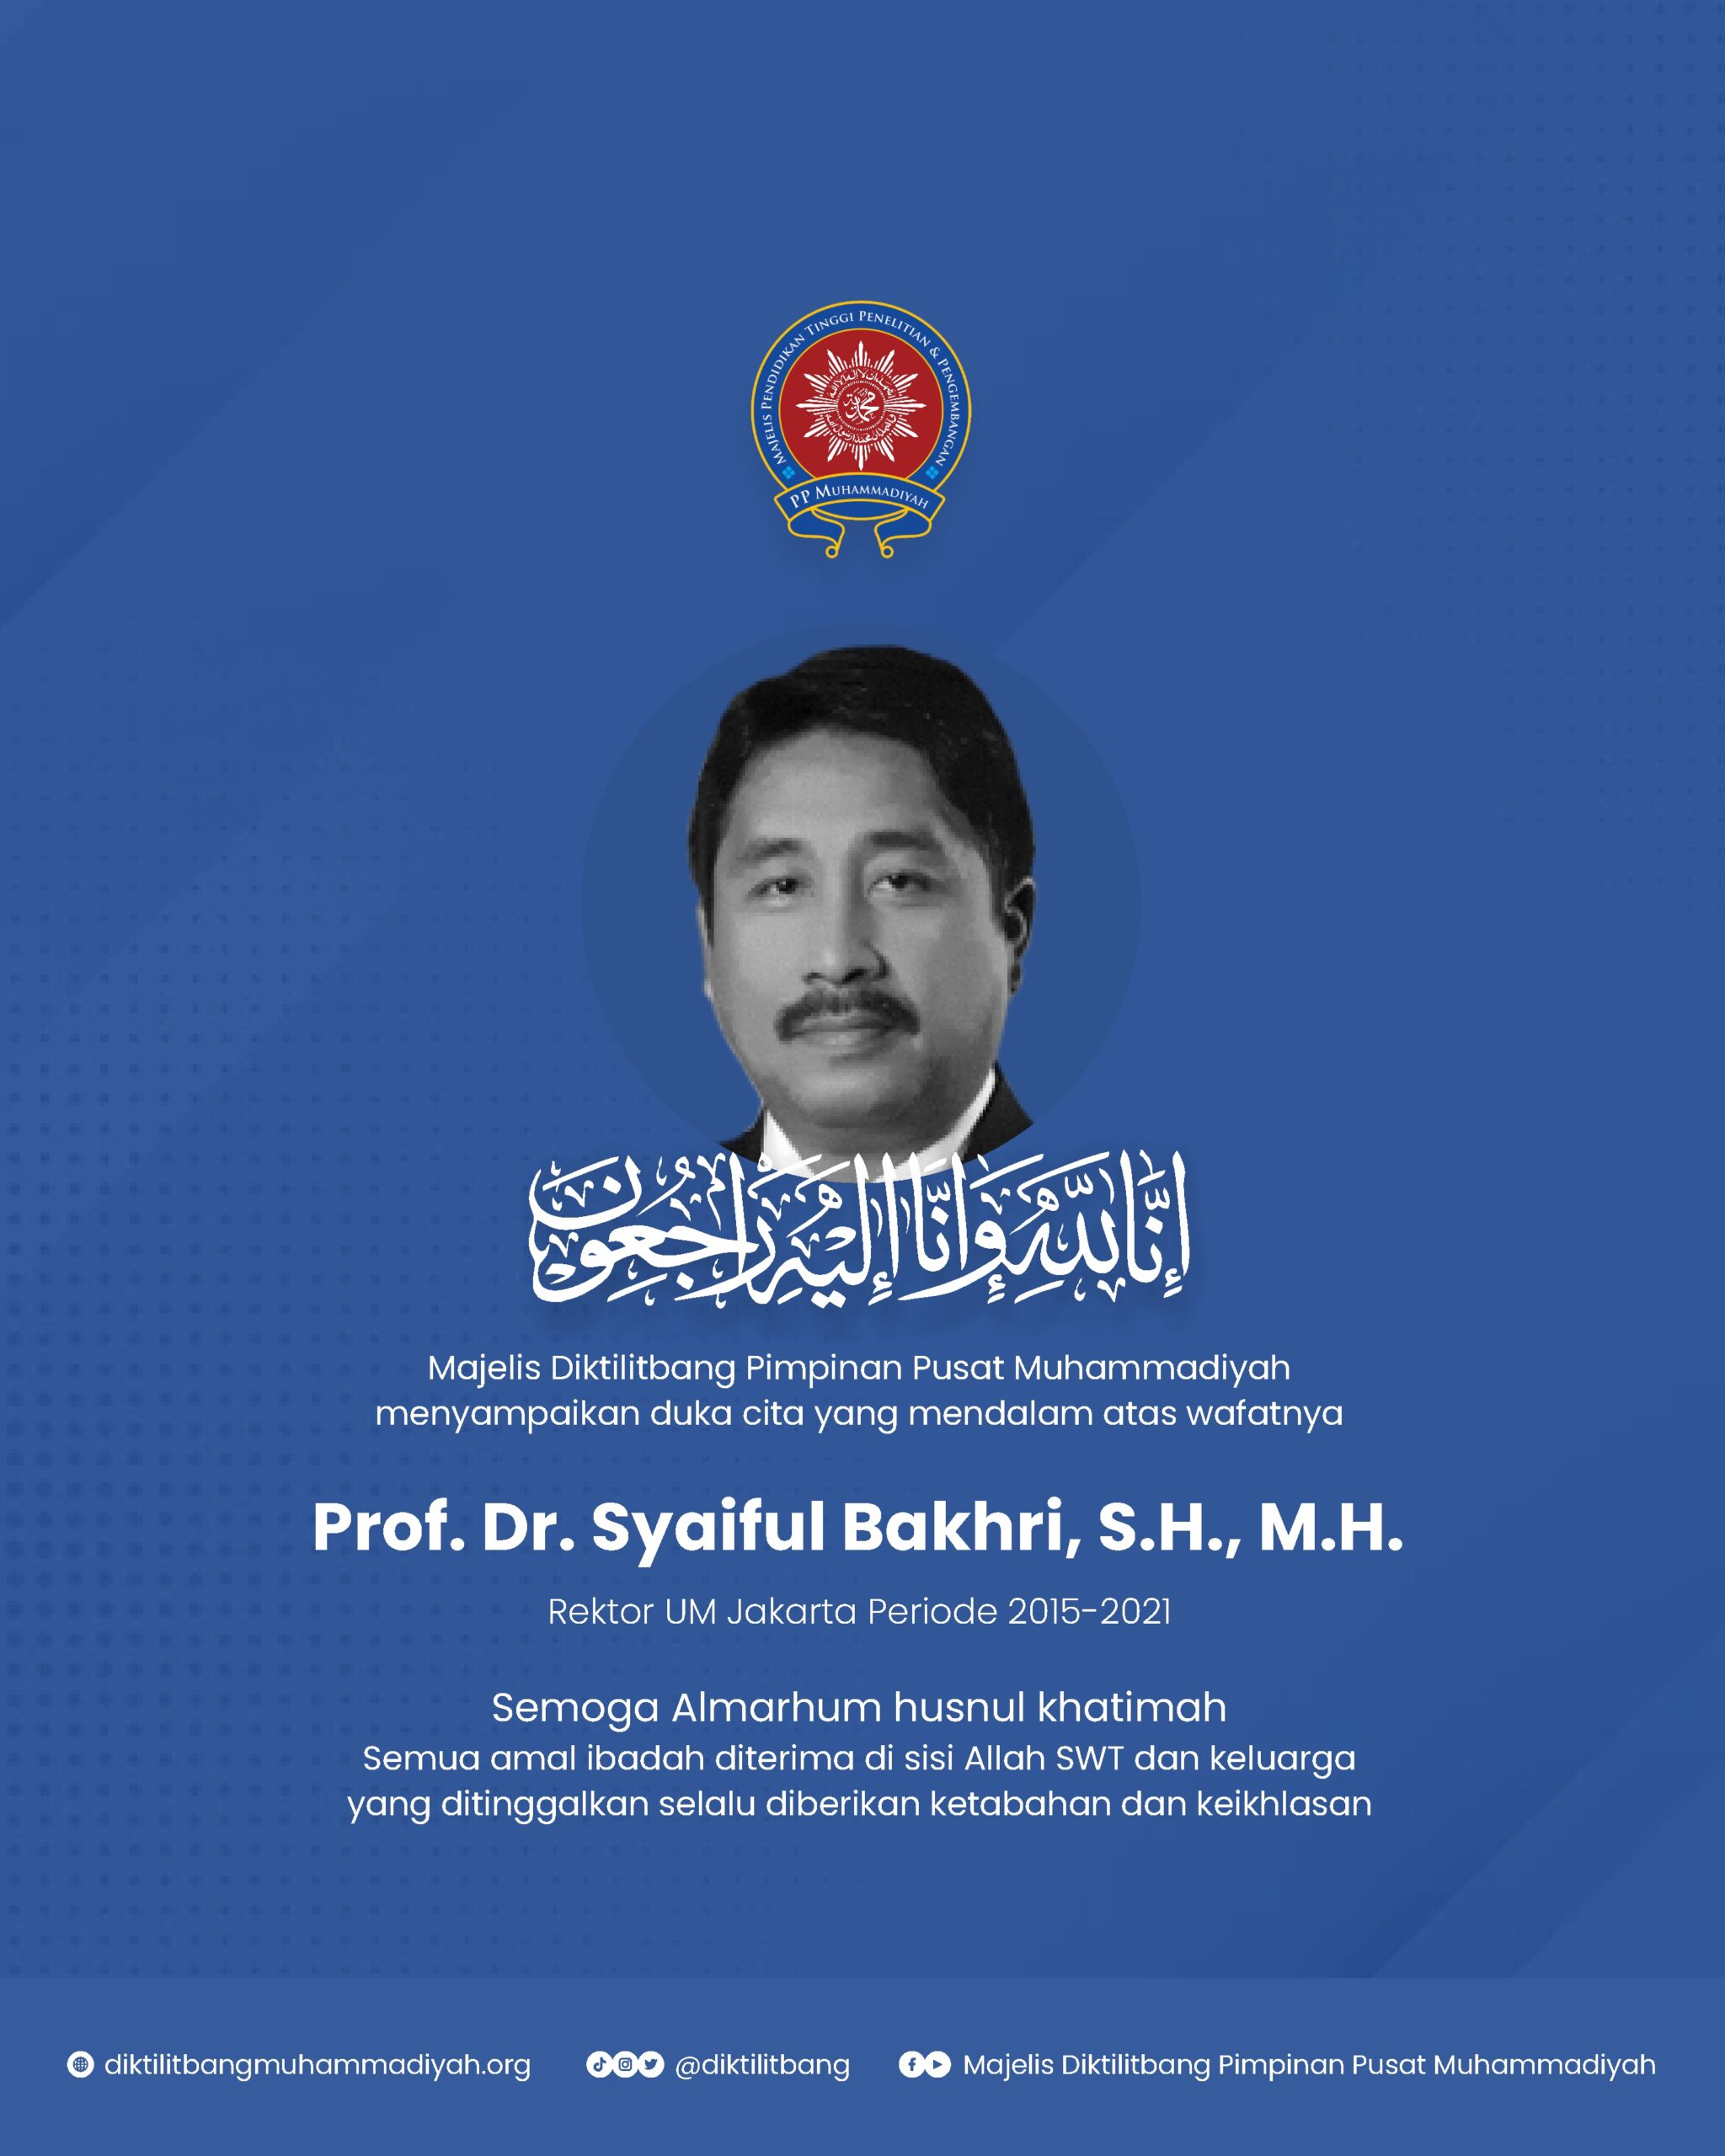 Ucapan Bela Sungkawa Atas Wafatnya Prof. Dr. Syaiful Bakhri, SH., MH, Rektor UM Jakarta (2015-2021)